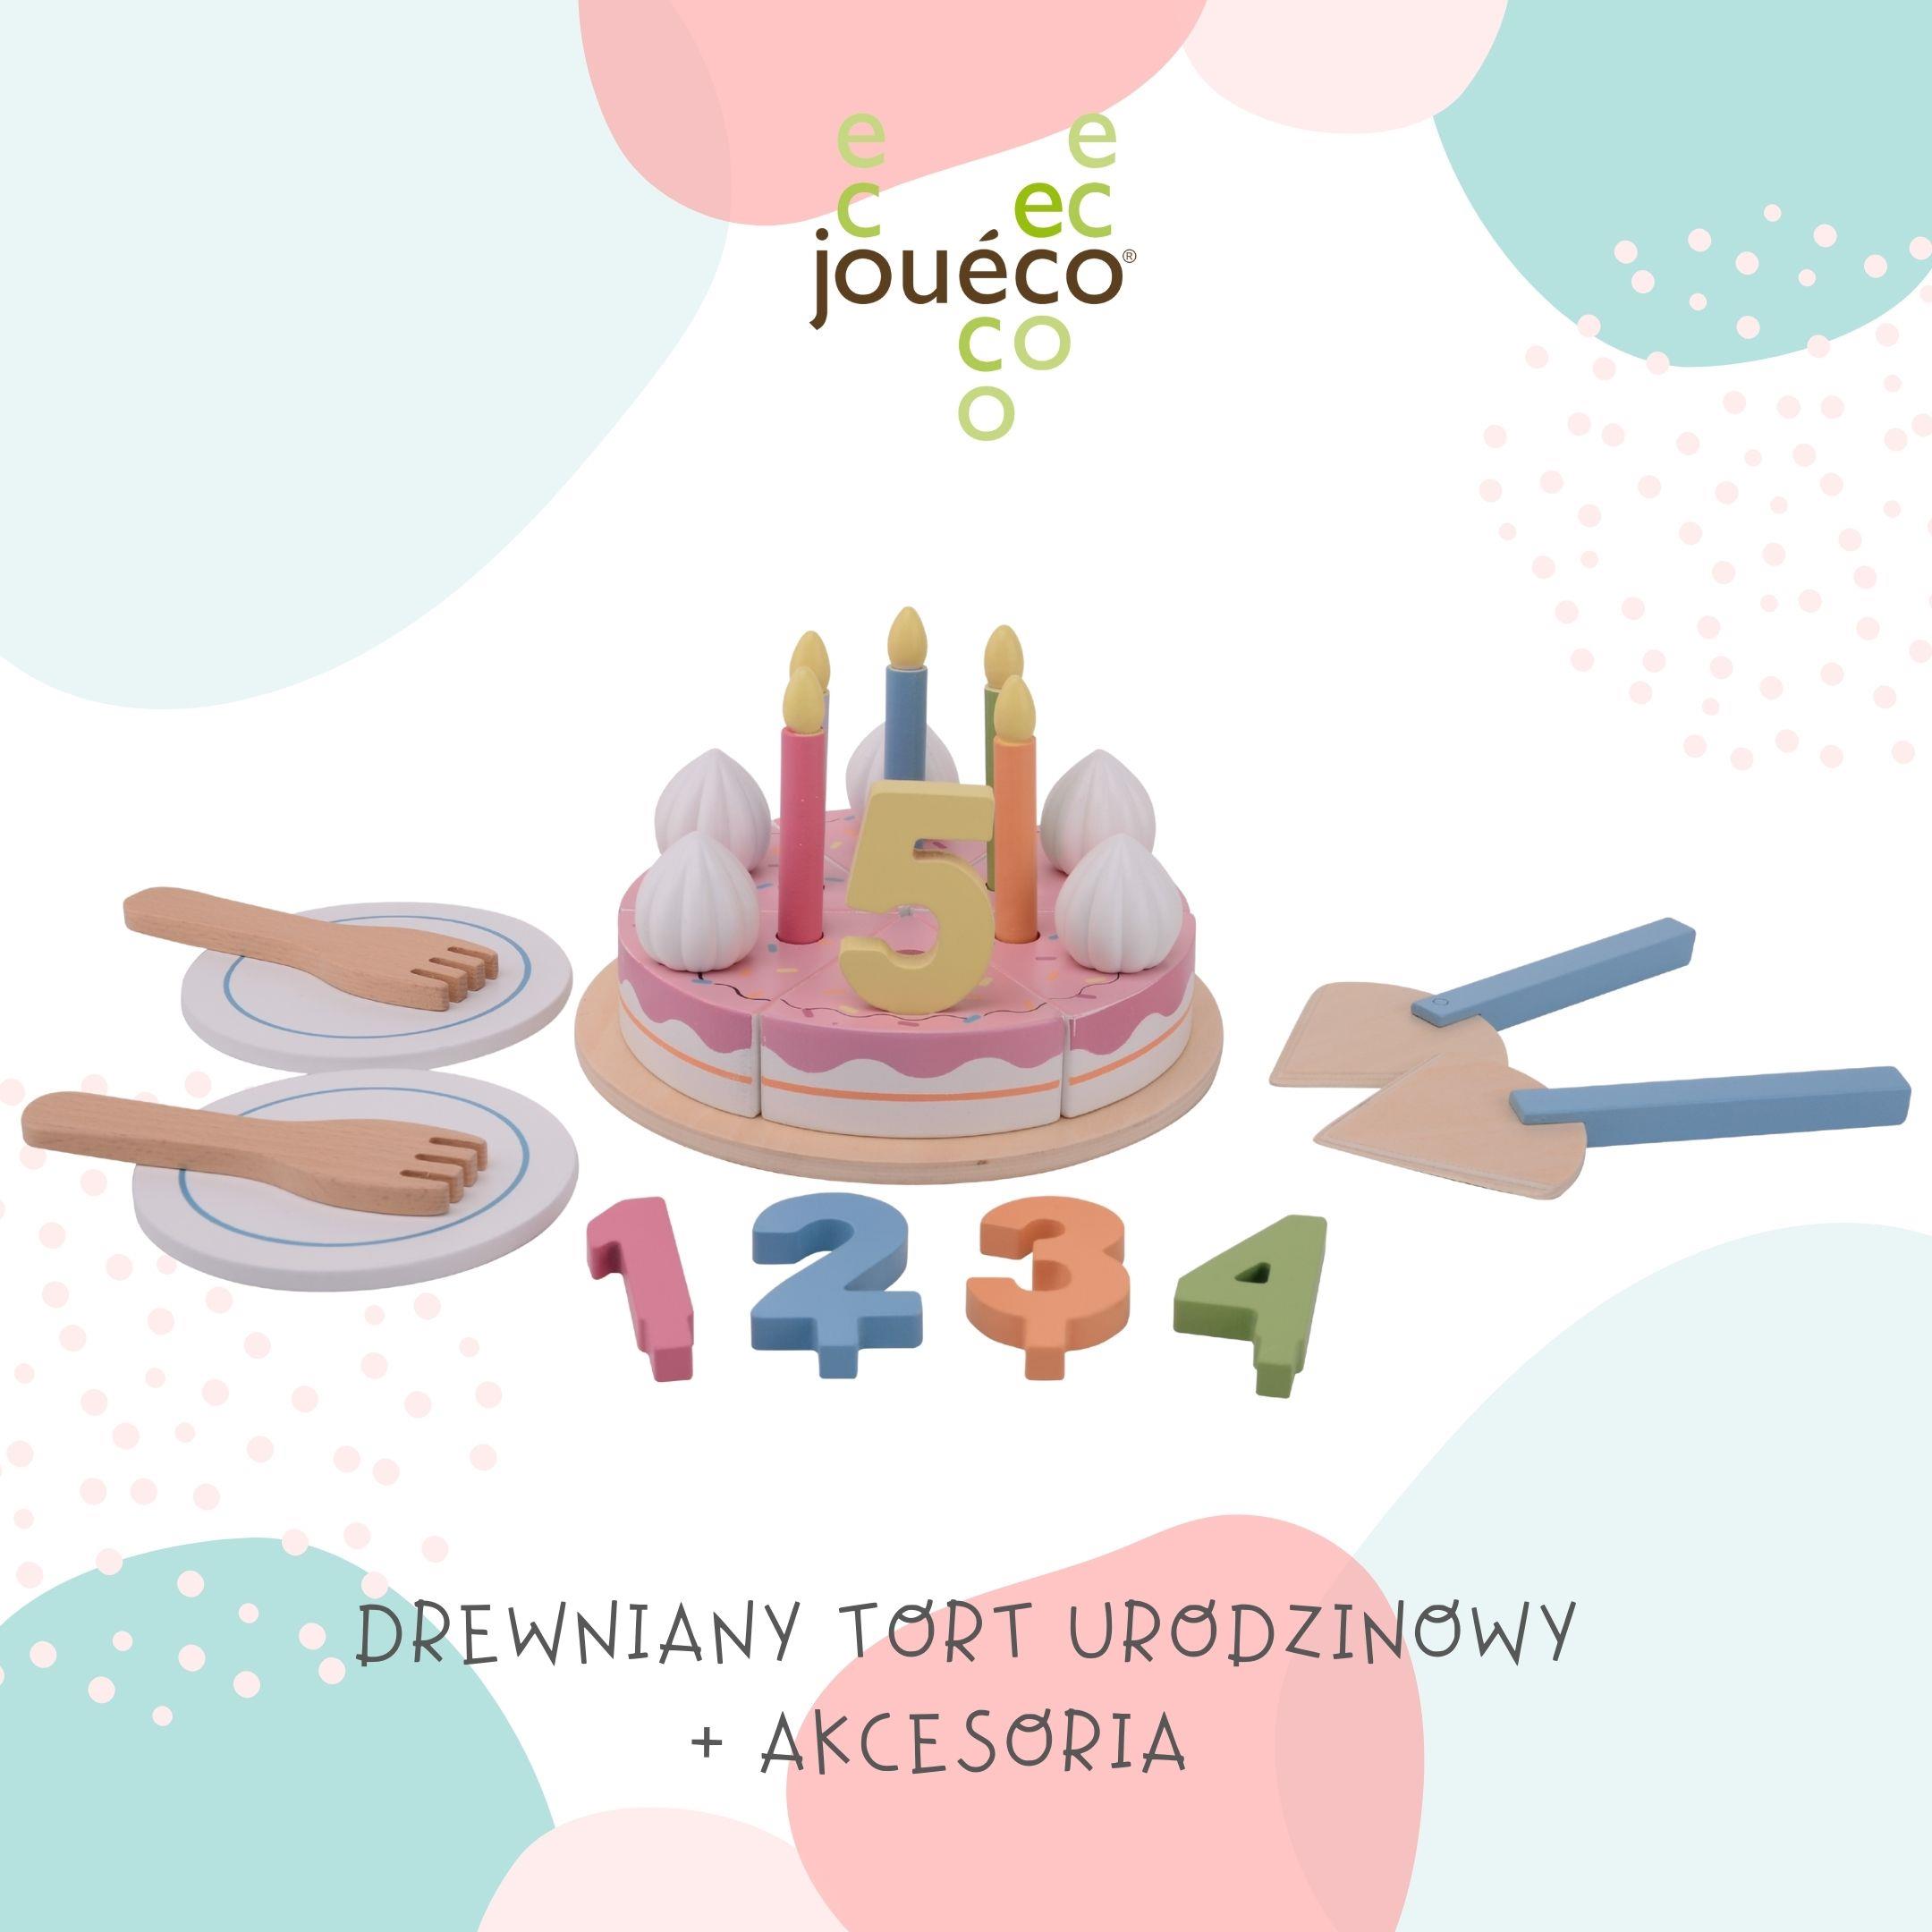 Joueco Drewniany tort urodzinowy i akcesoria